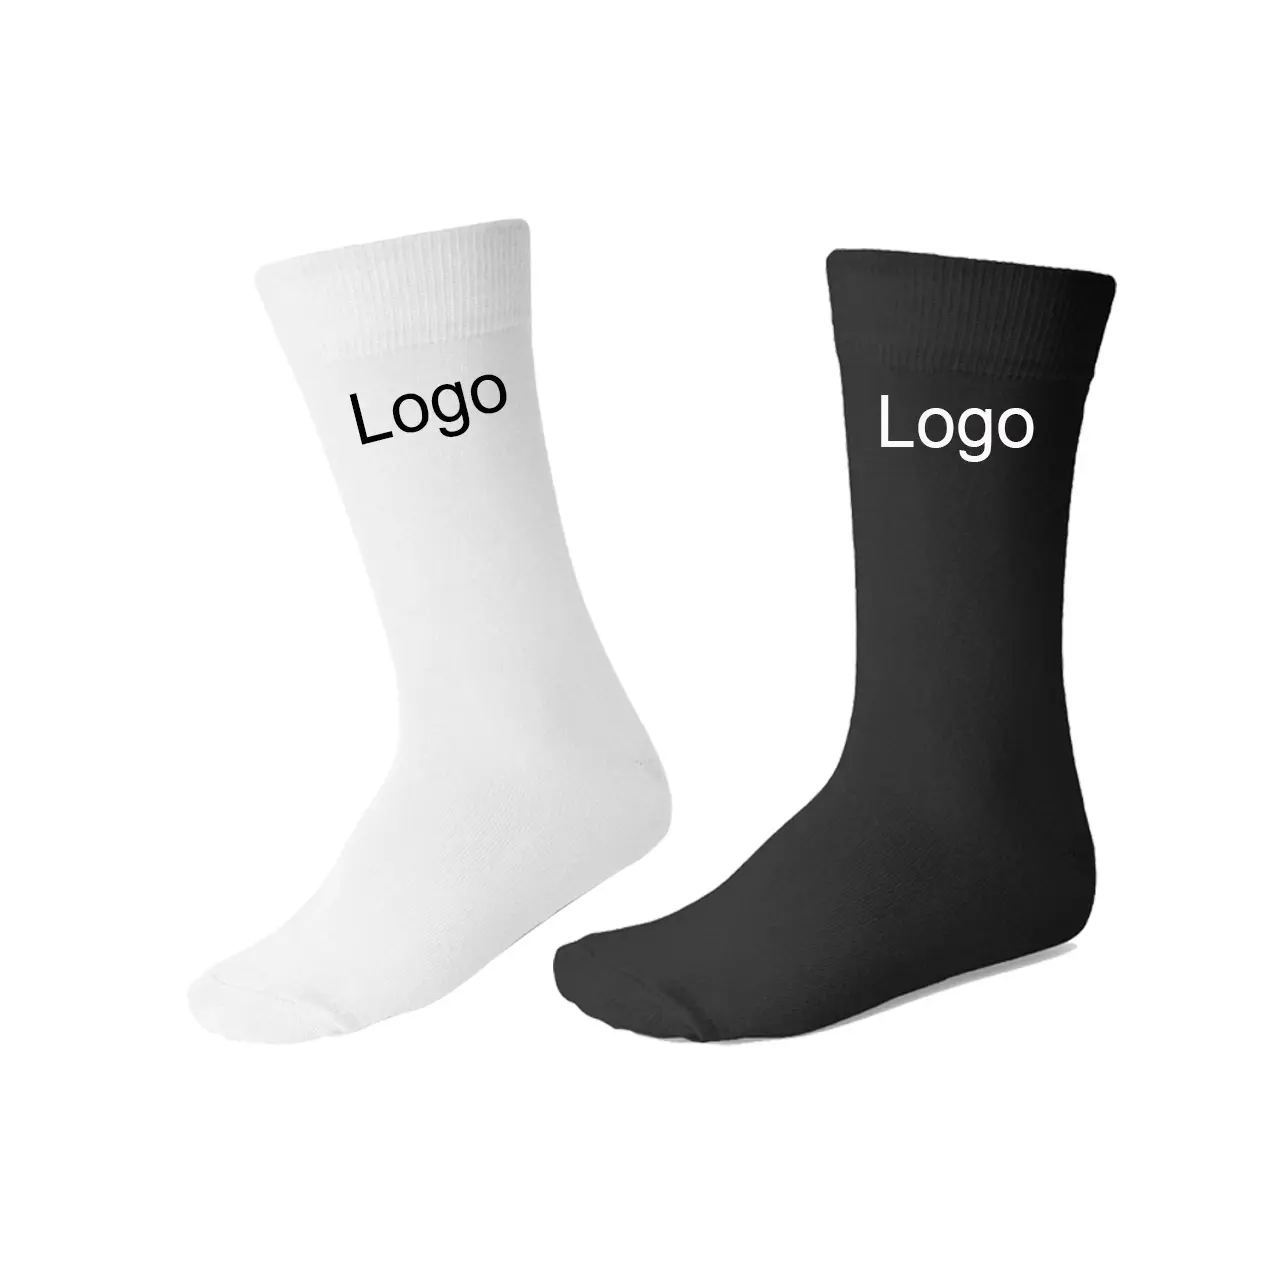 New Socks No Minimum Order High Quality Casual Socks Sport Socks